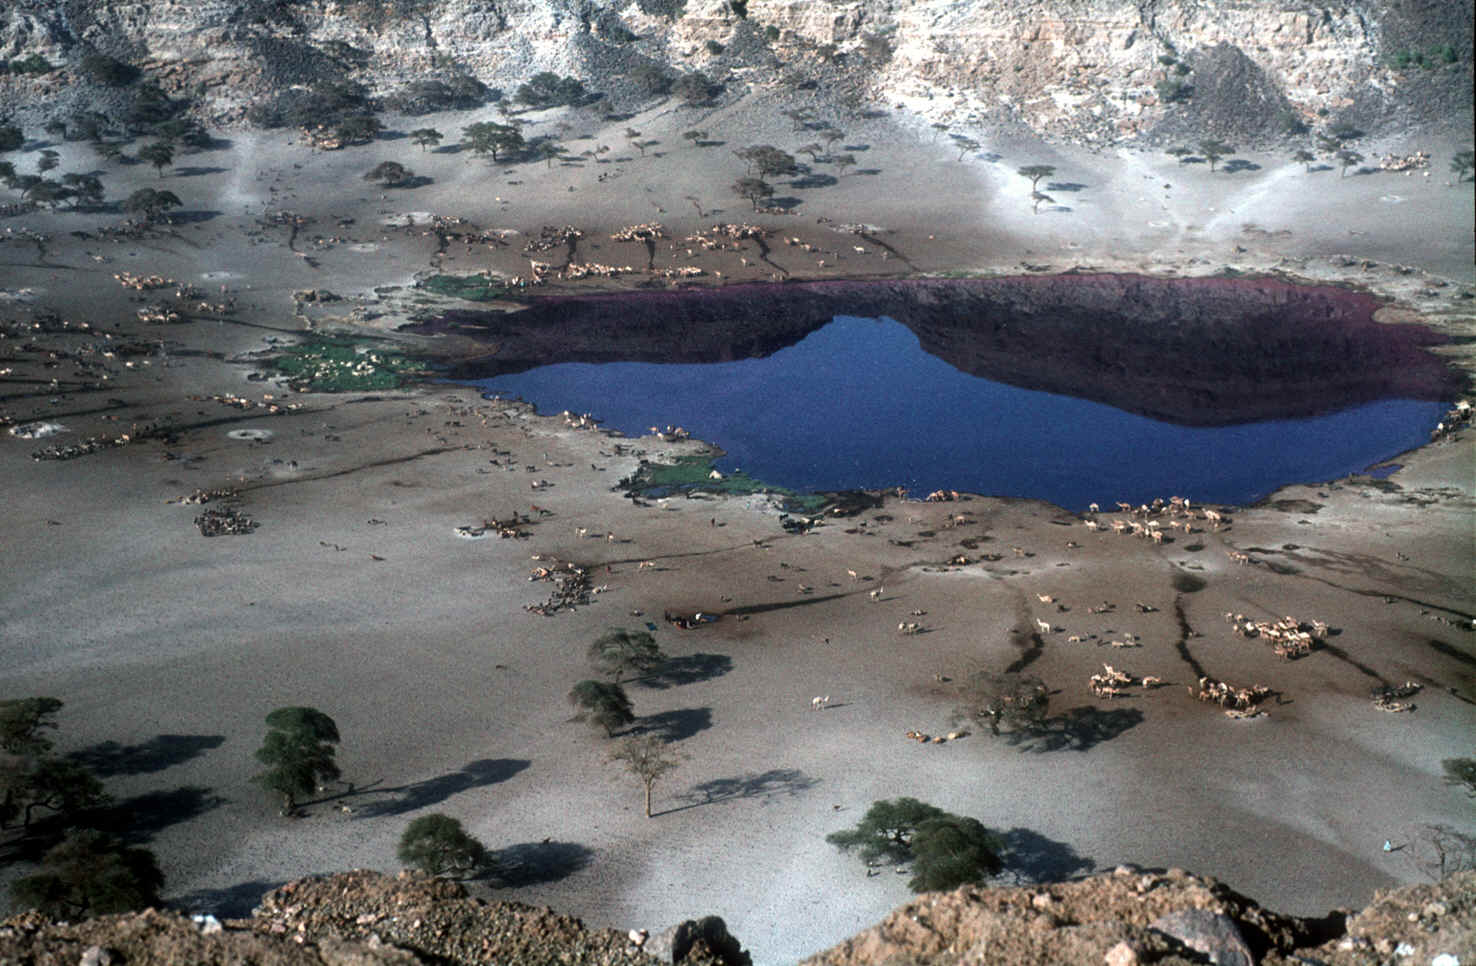 Sudan-Malhakrater.jpg (1680677 Byte)